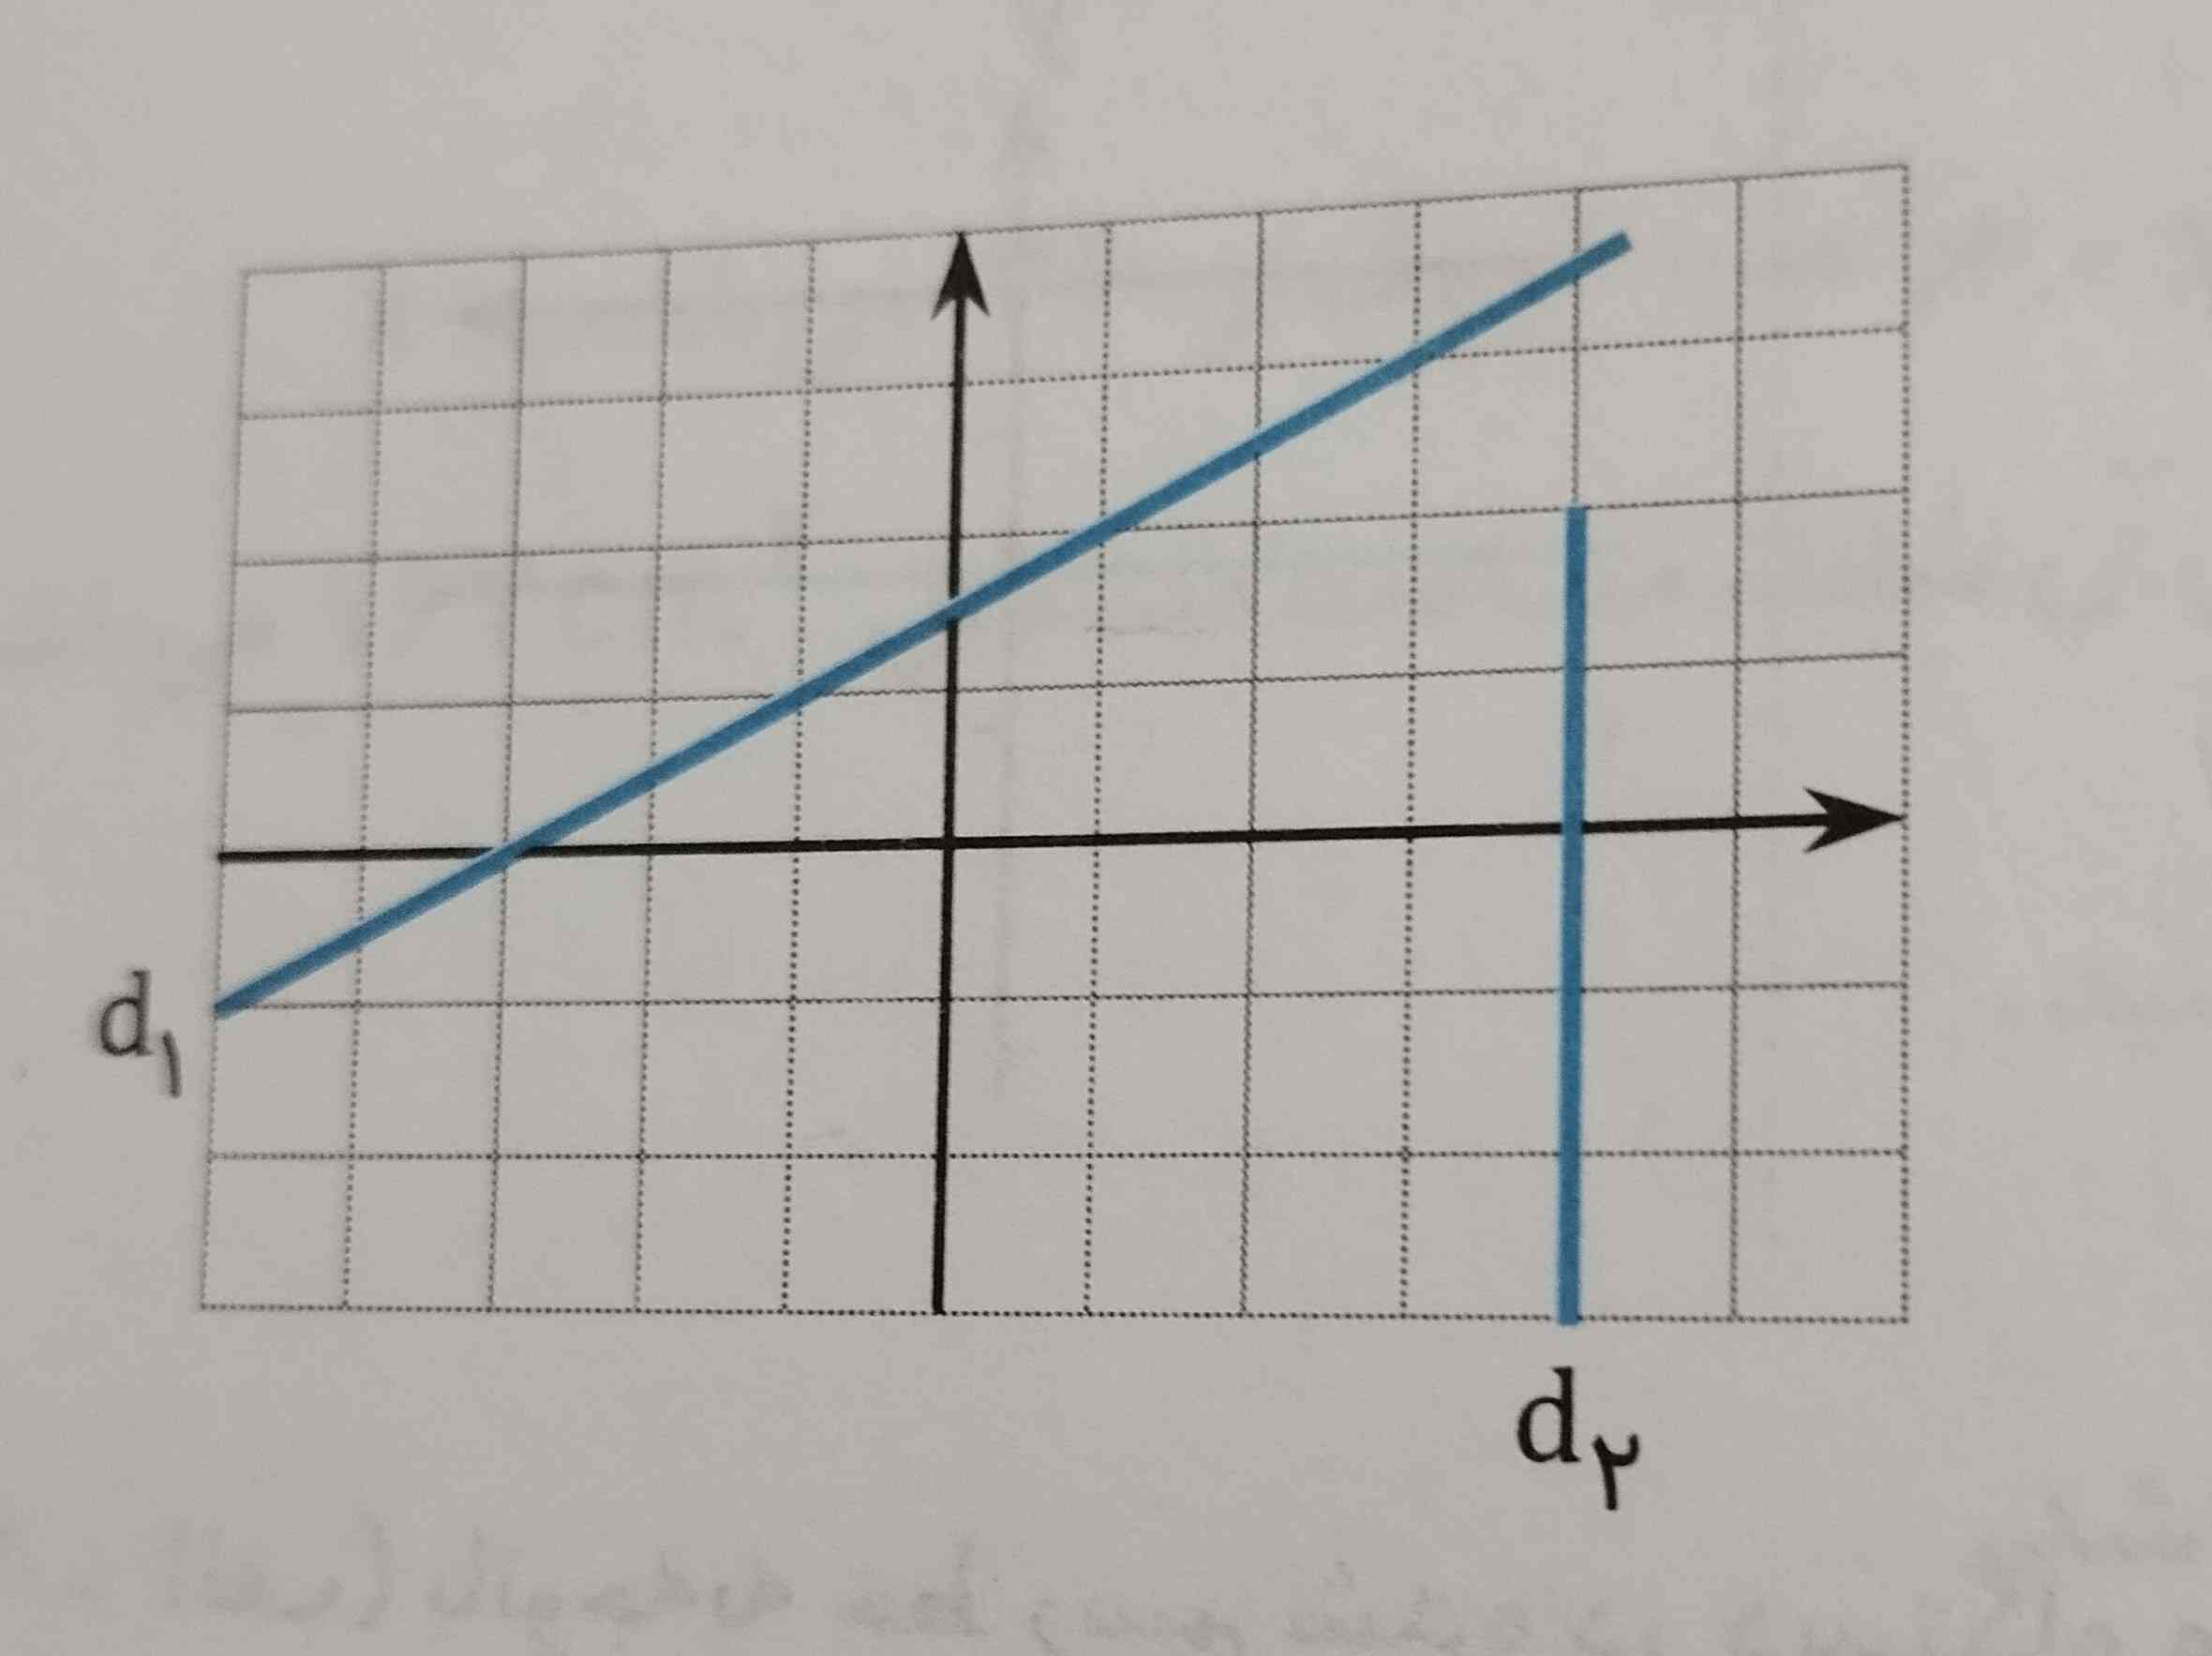 معادله خط های رسم شده را بنویسید
